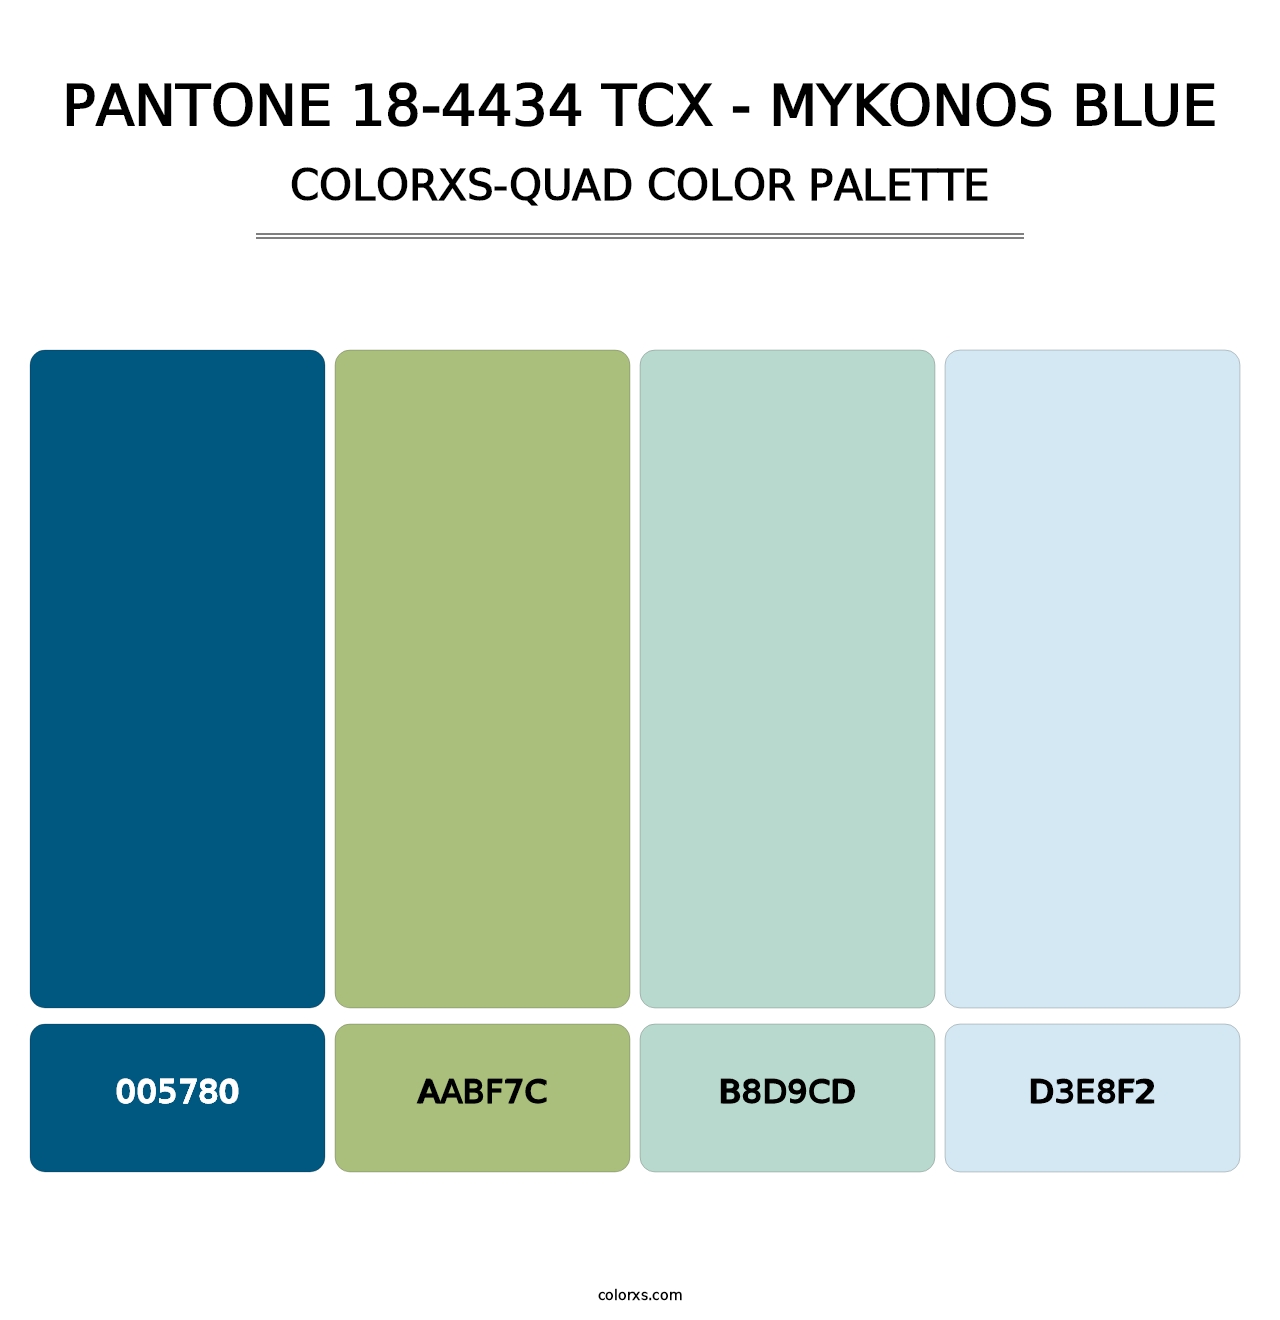 PANTONE 18-4434 TCX - Mykonos Blue - Colorxs Quad Palette